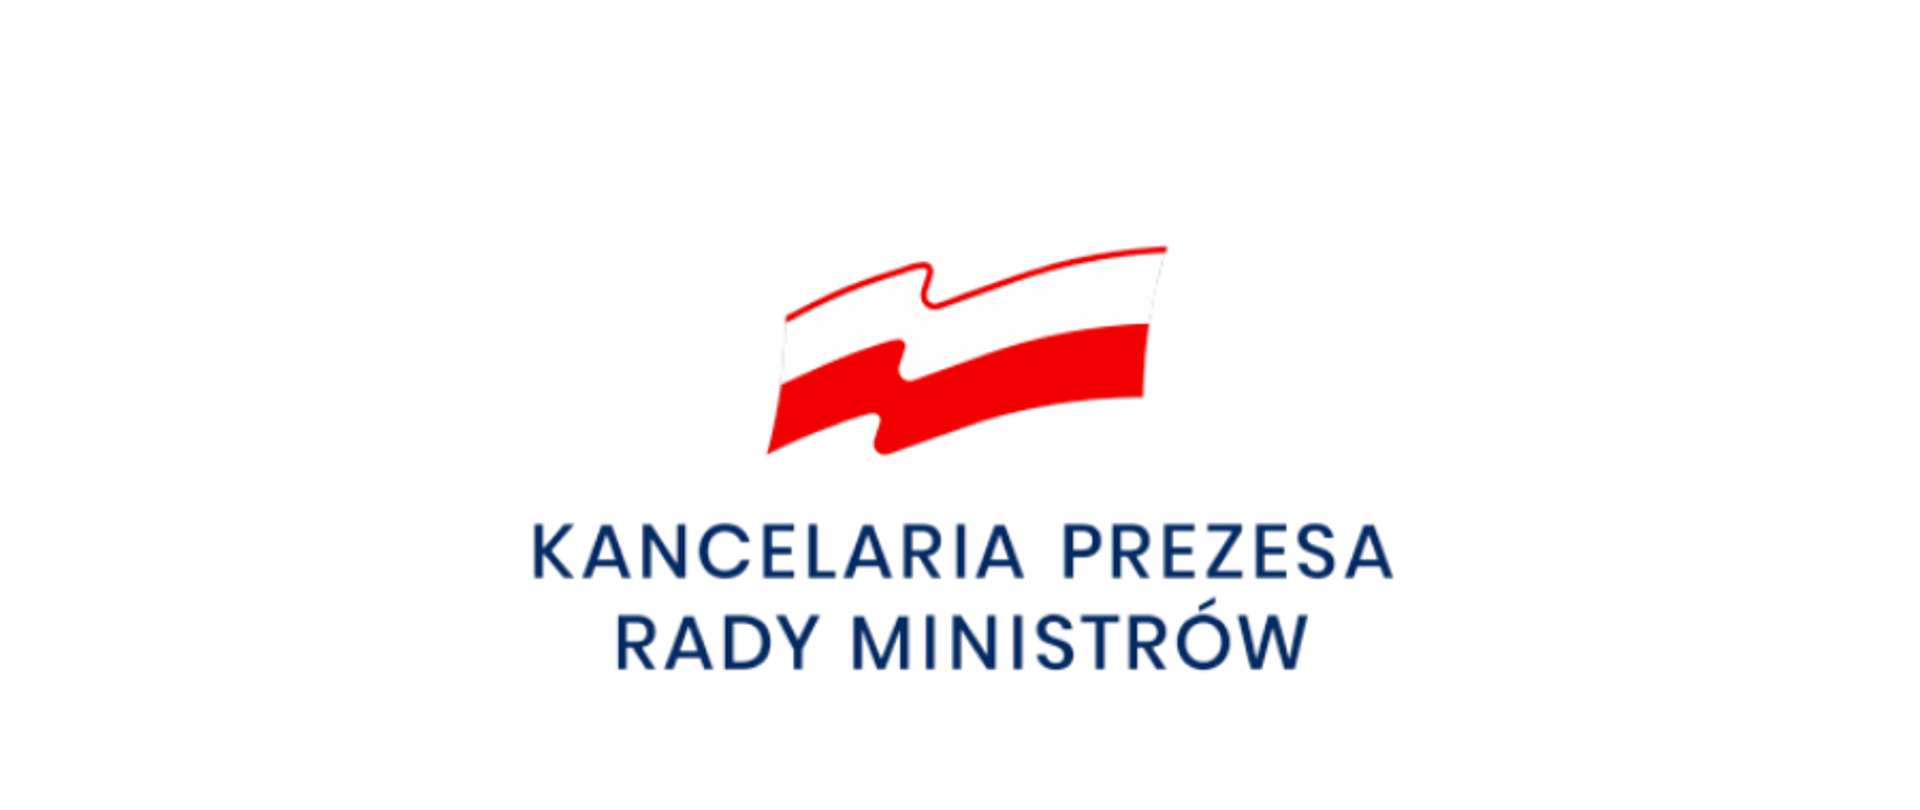 Flaga Polski, pod flagą napis Kancelaria Prezesa Rady Ministrów na białym tle.